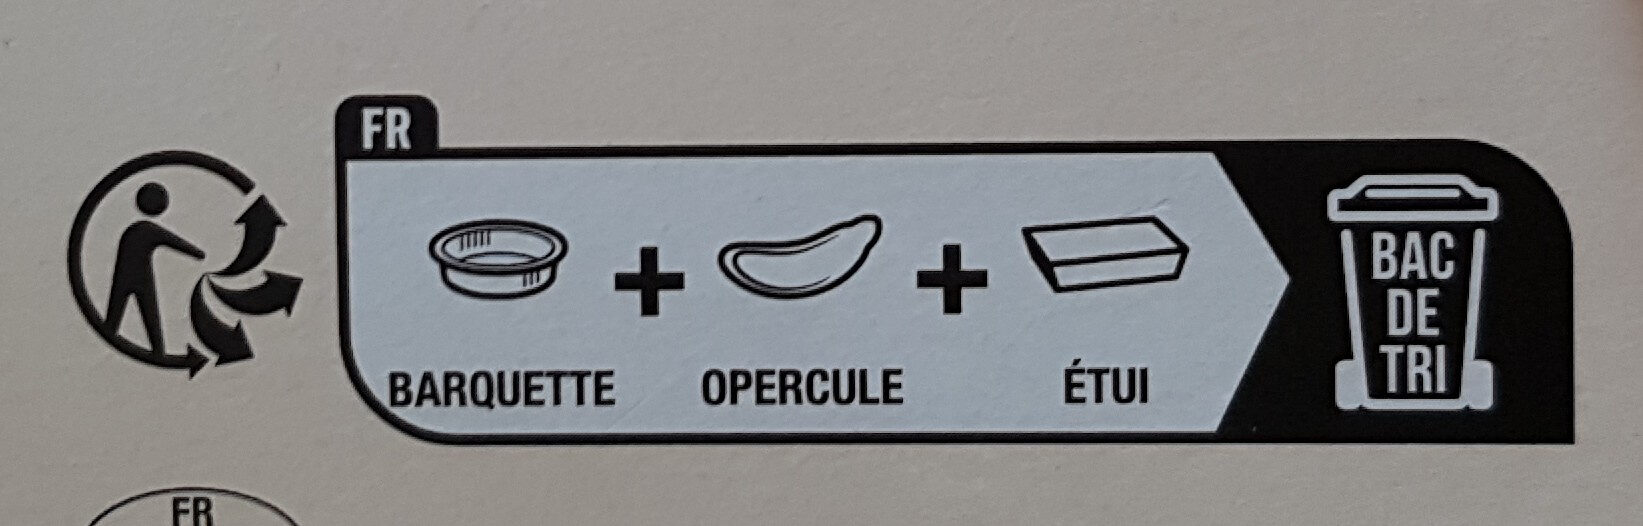 Lasagnes à la bolognaise - Instruction de recyclage et/ou informations d'emballage